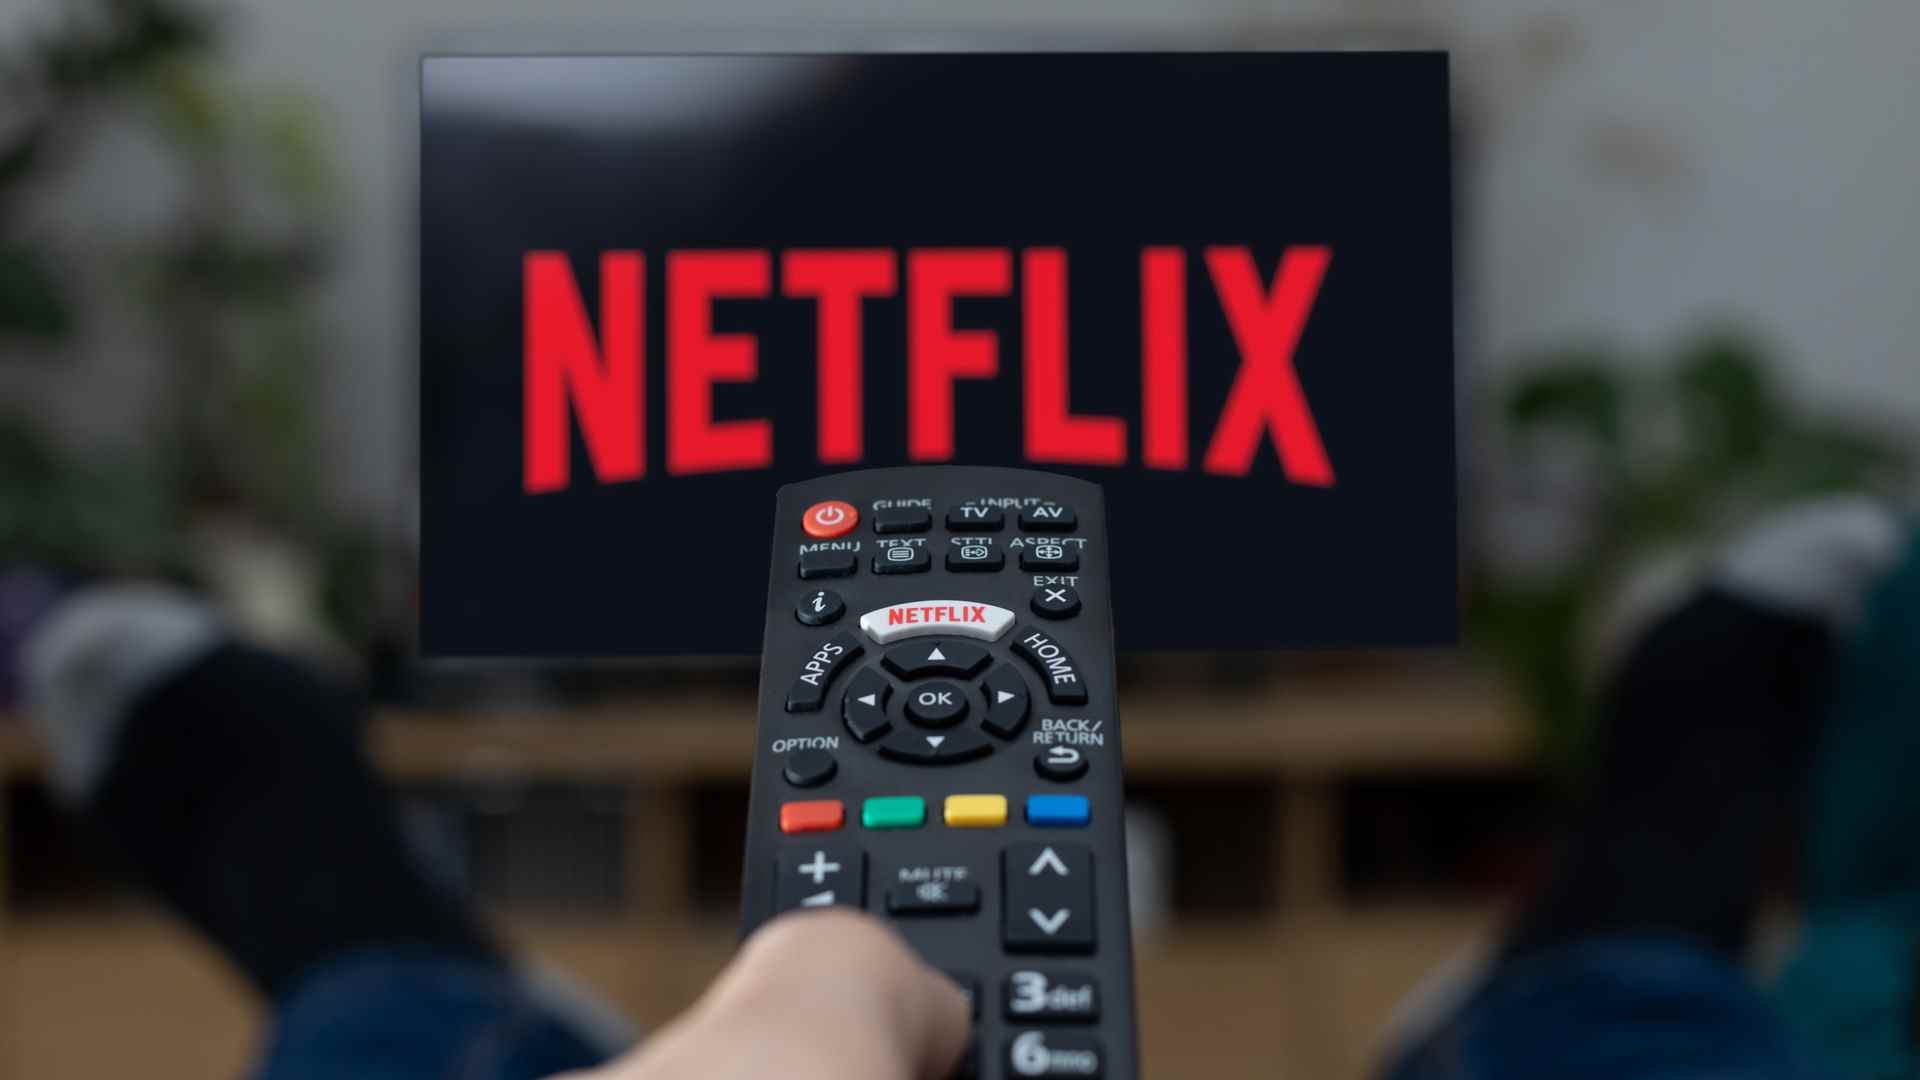 Une image promotionnelle d'une personne regardant Netflix sur son téléviseur, avec une télécommande dans la main gauche